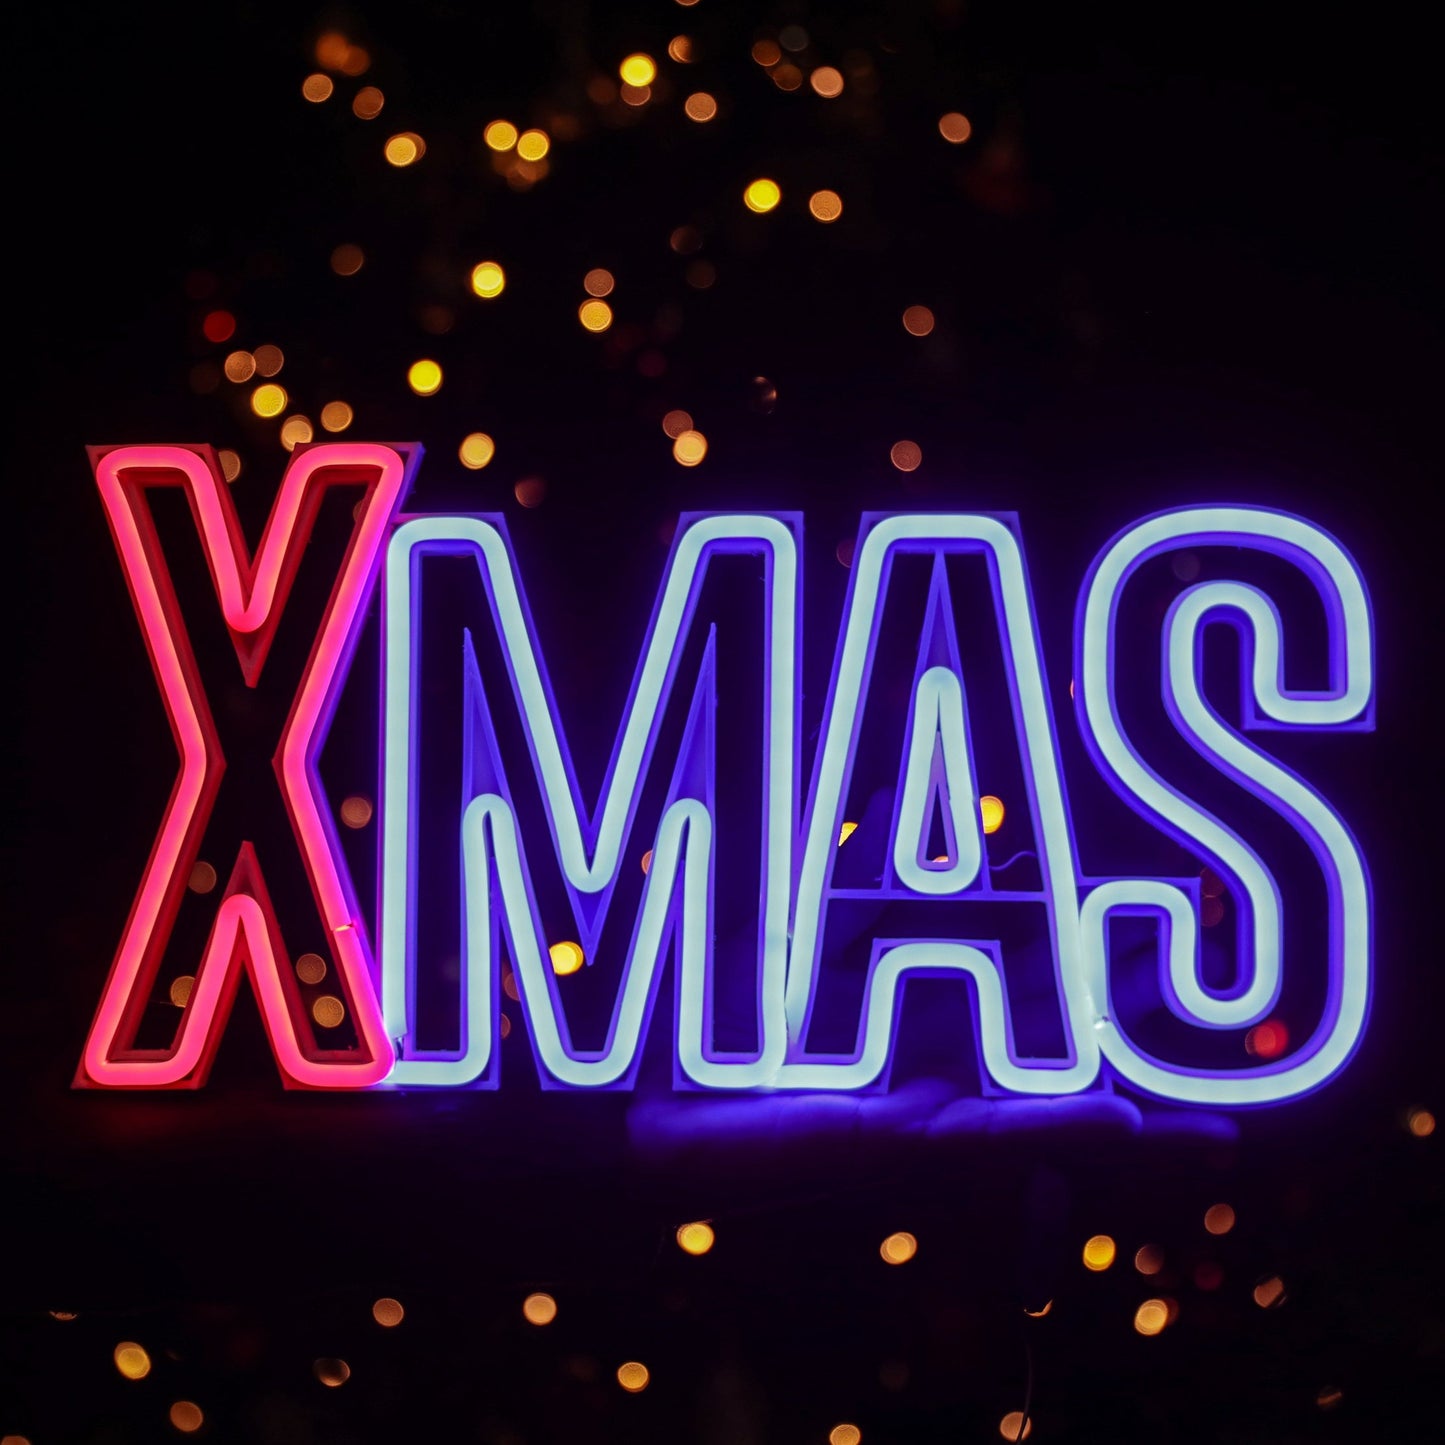 Natale, Luminarie, artigianato, ho ho ho, buon natale, felice natale, babbo natale, illuminazione, neon, led, neon-led, illuminare, puglia, tradizione, feste, buone feste.